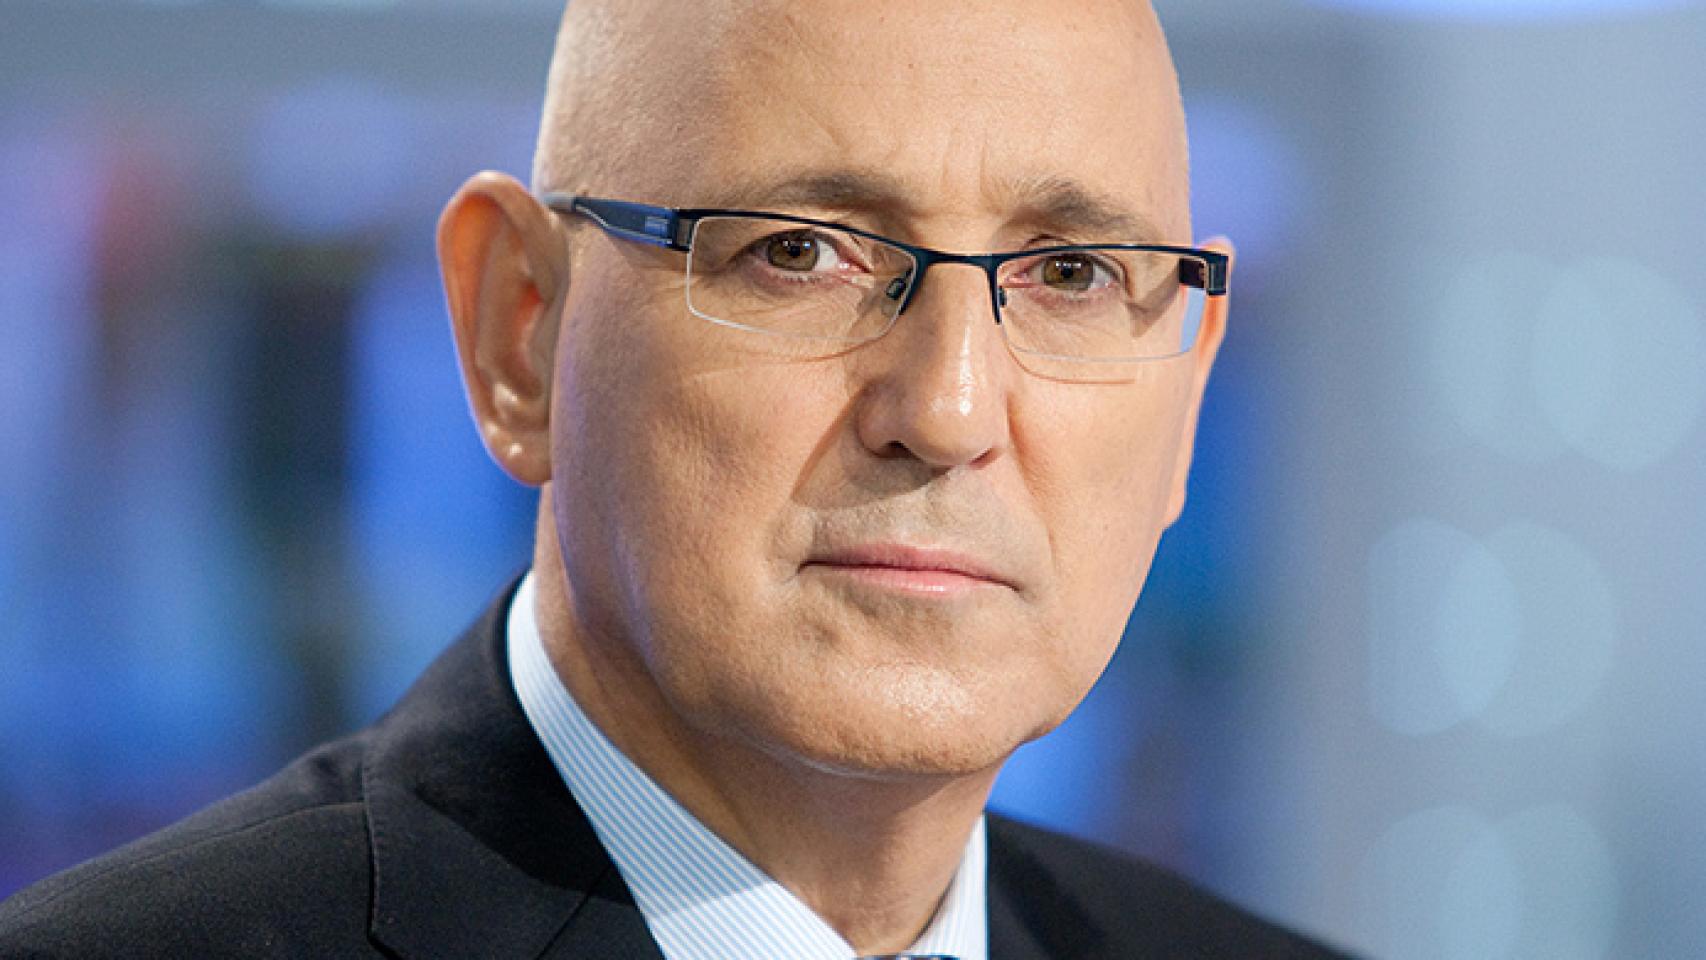 El director de informativos de TVE criticó las viñetas de 'Charlie Hebdo'